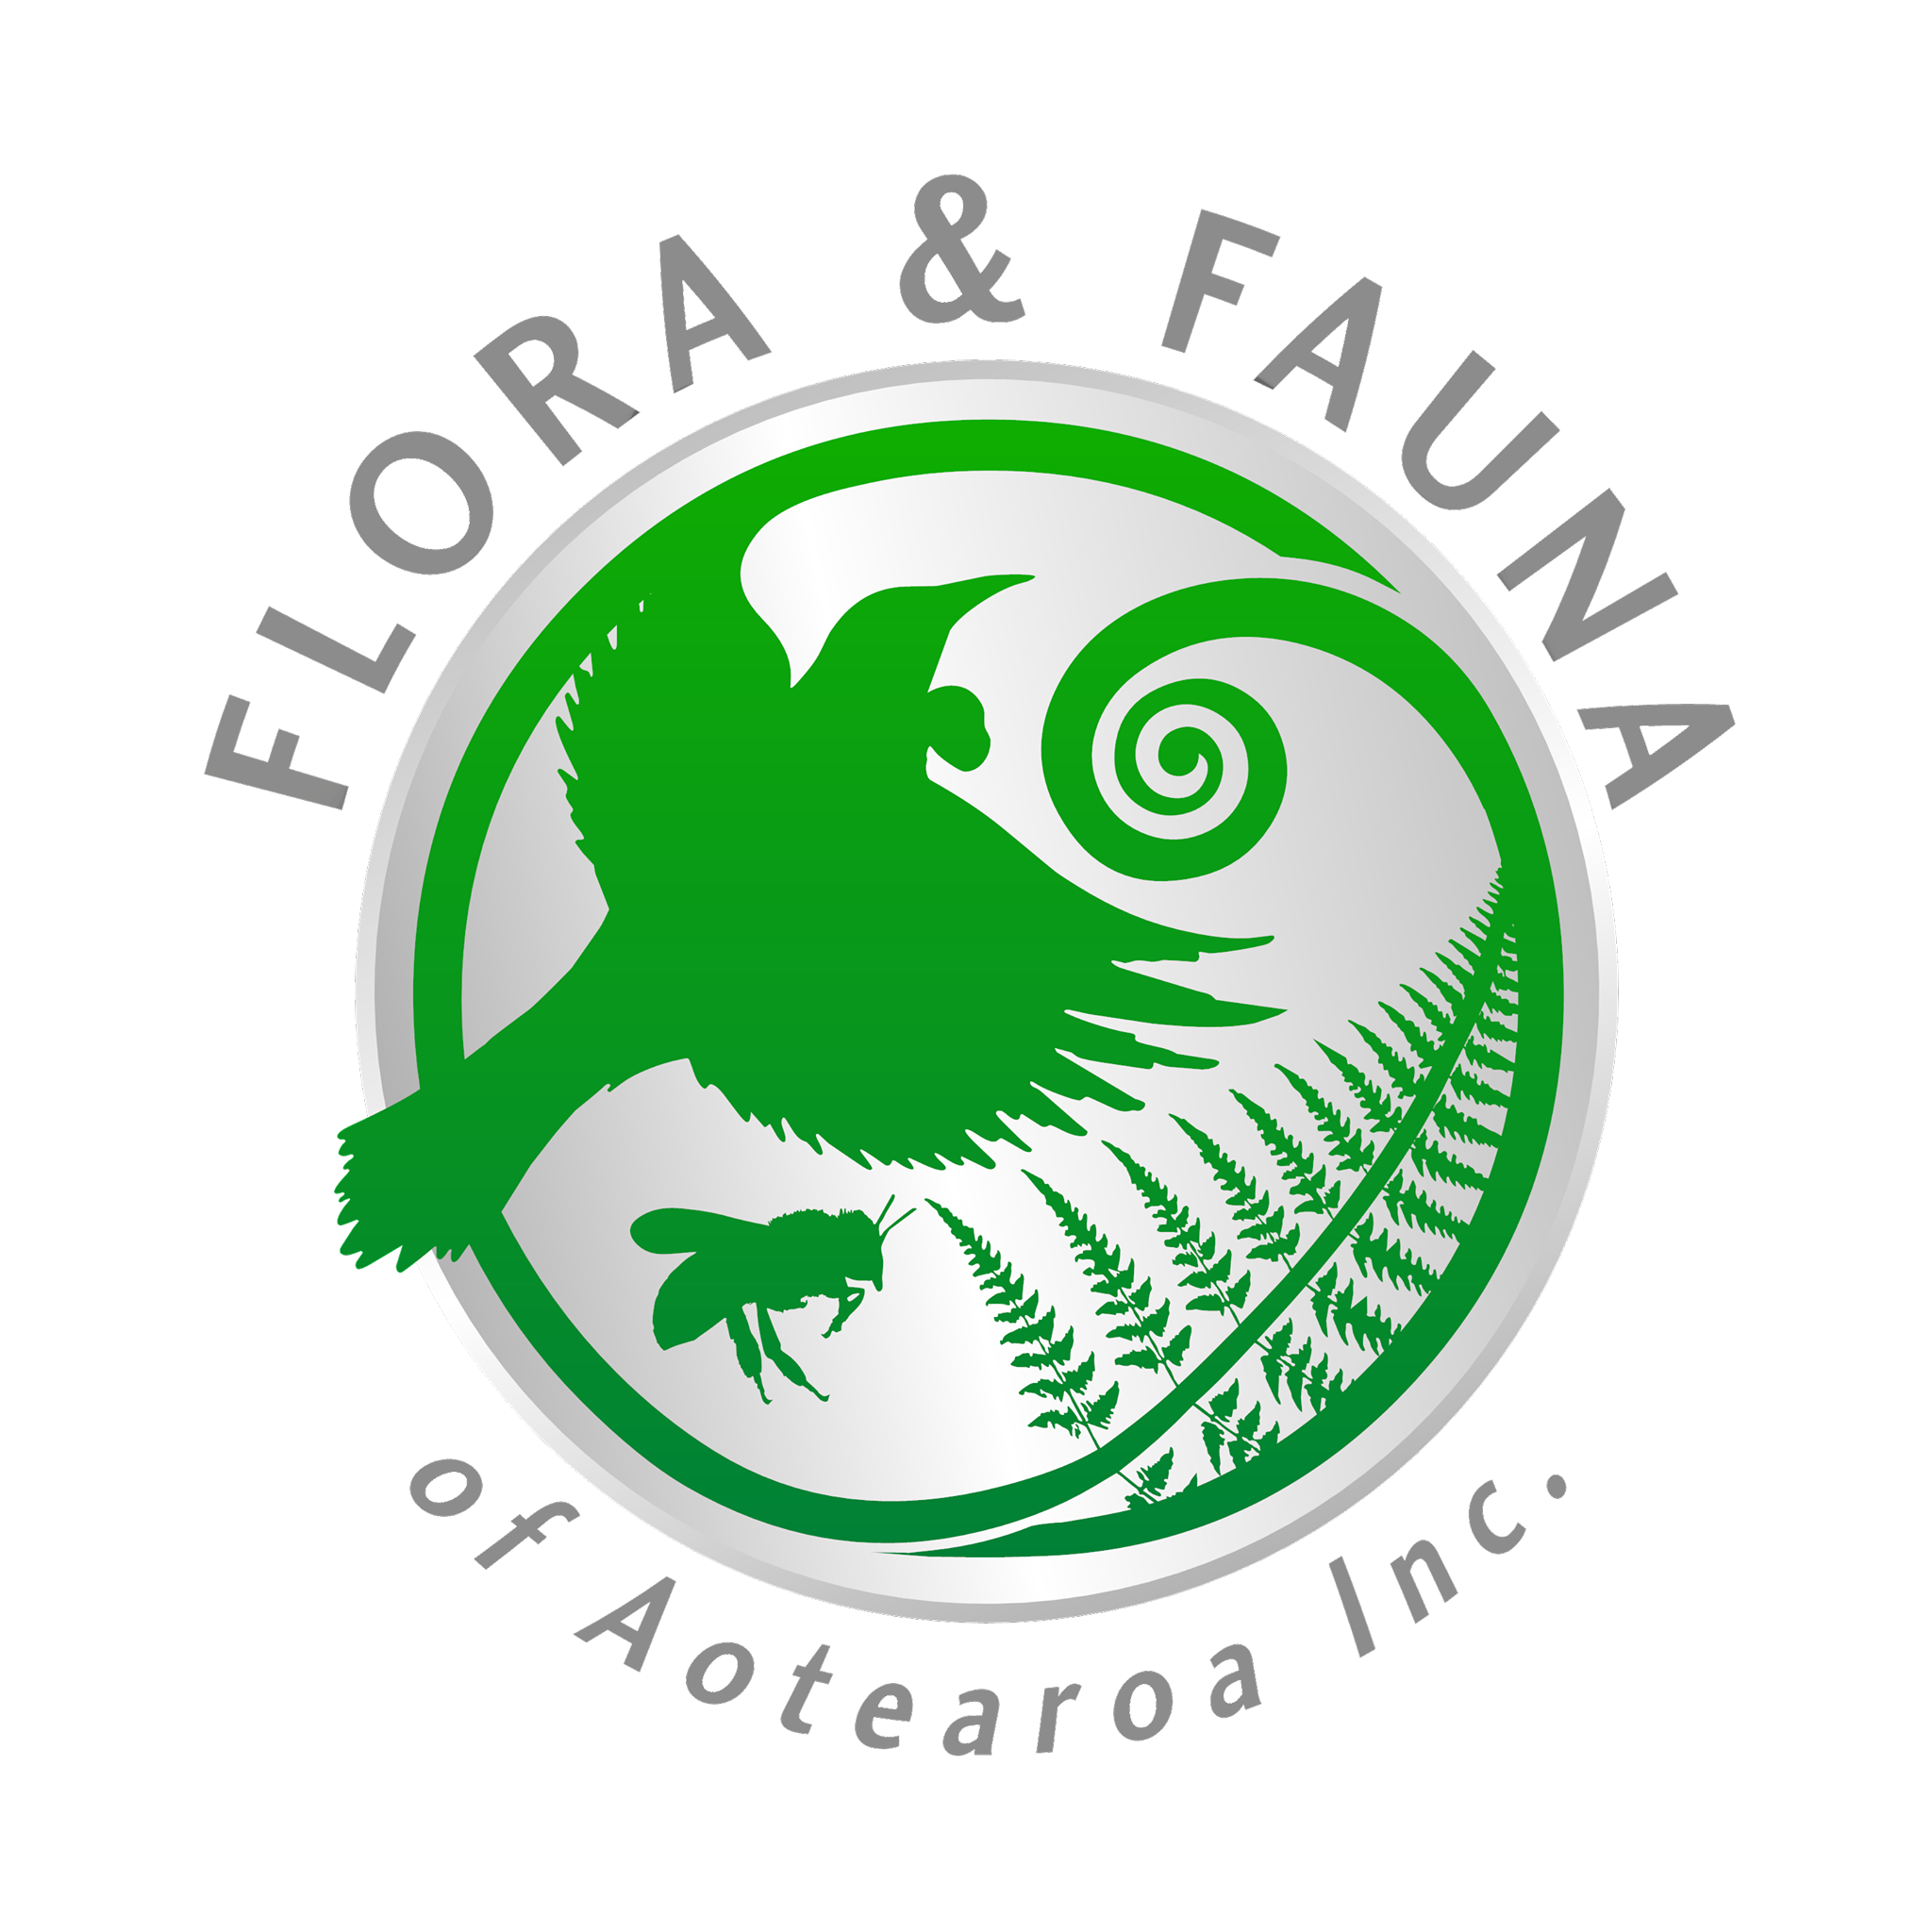 Flora and Fauna of Aotearoa